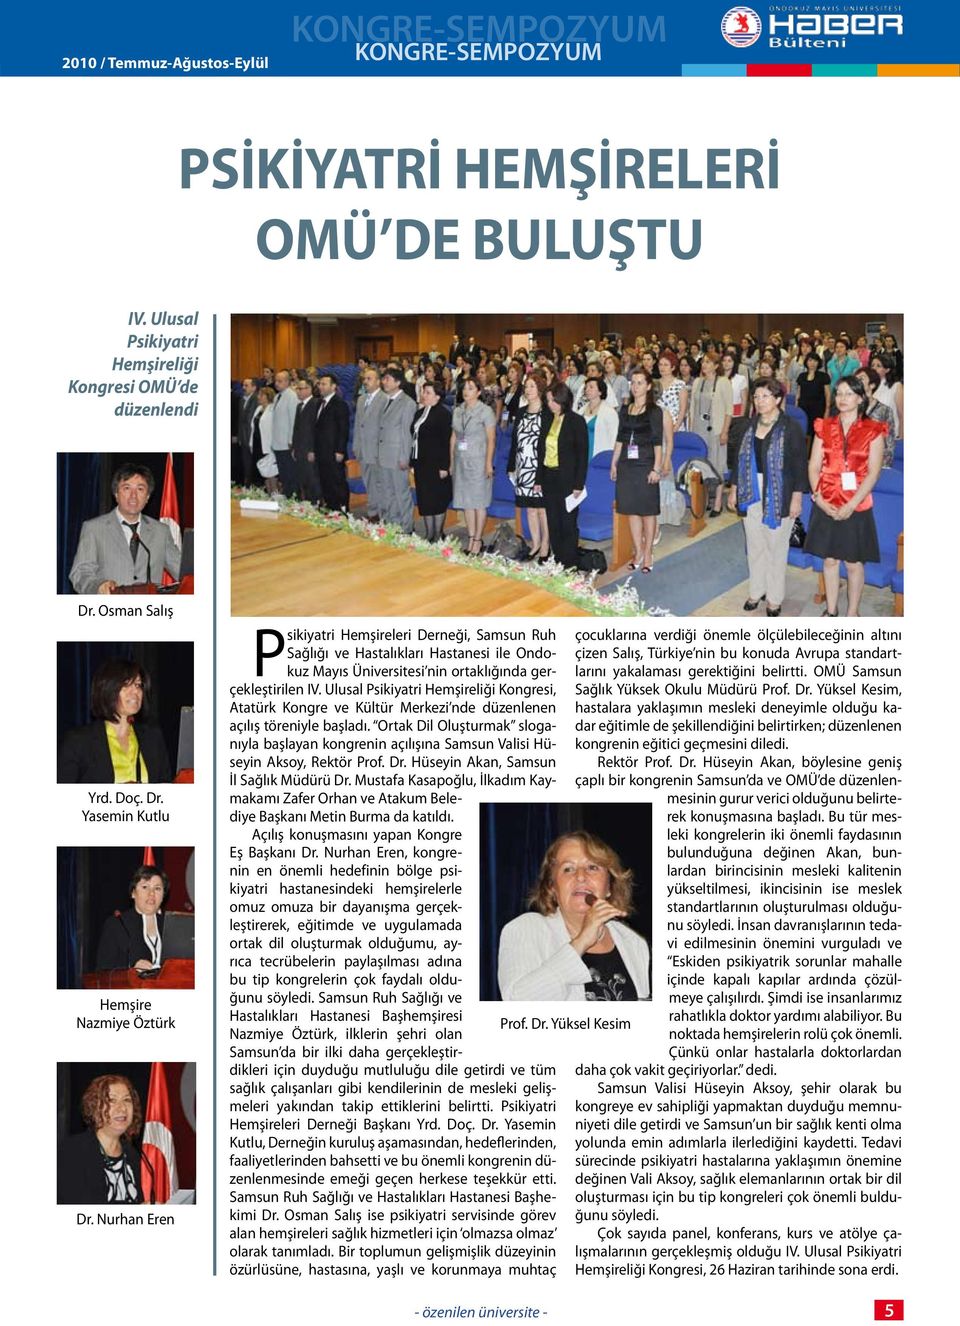 Ulusal Psikiyatri Hemşireliği Kongresi, Atatürk Kongre ve Kültür Merkezi nde düzenlenen açılış töreniyle başladı.